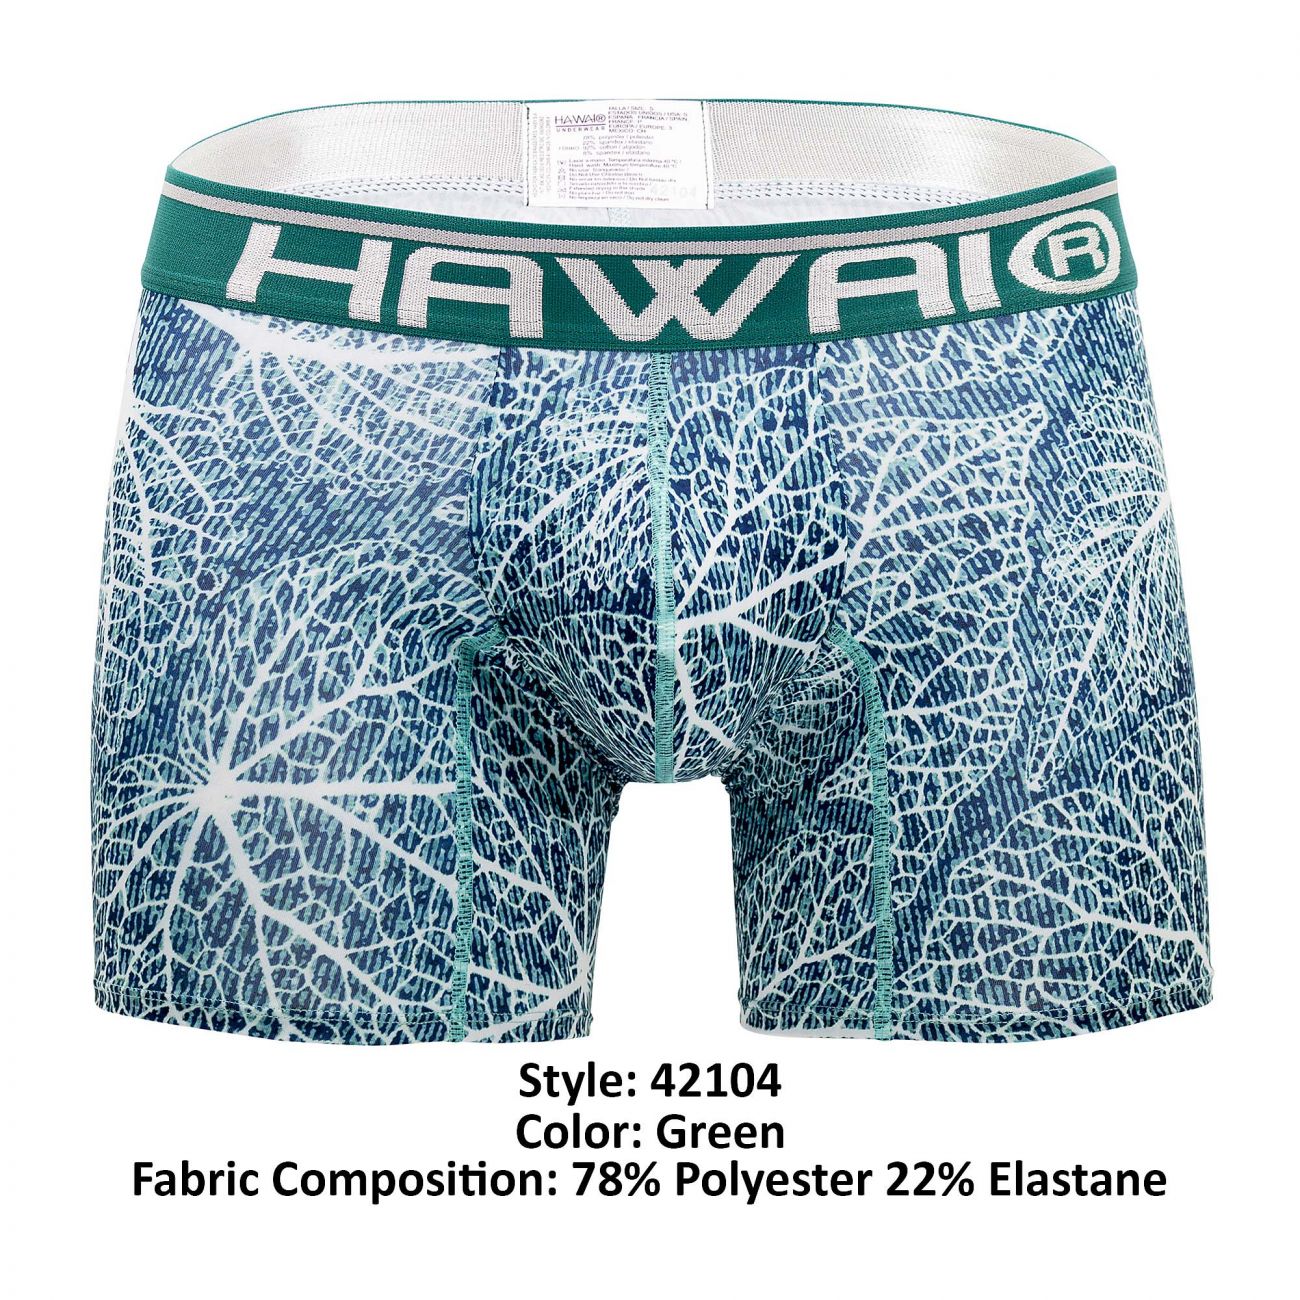 HAWAI 42104 Printed Boxer Briefs Color Green